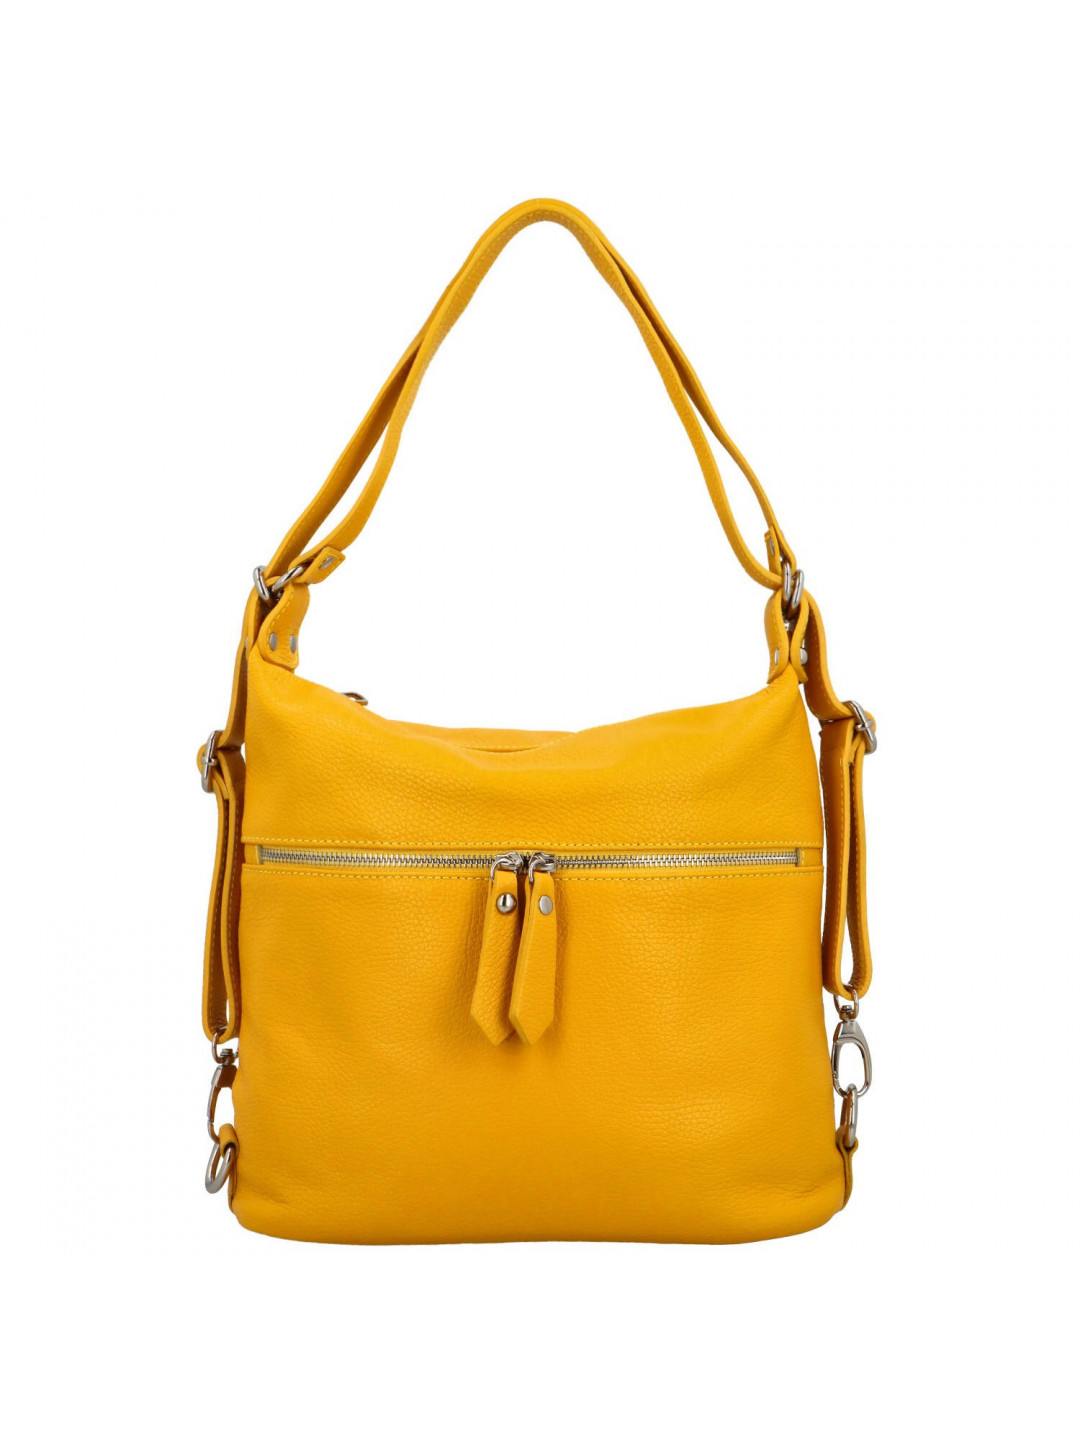 Dámský kožený kabelko batoh žlutý – Delami Teresa